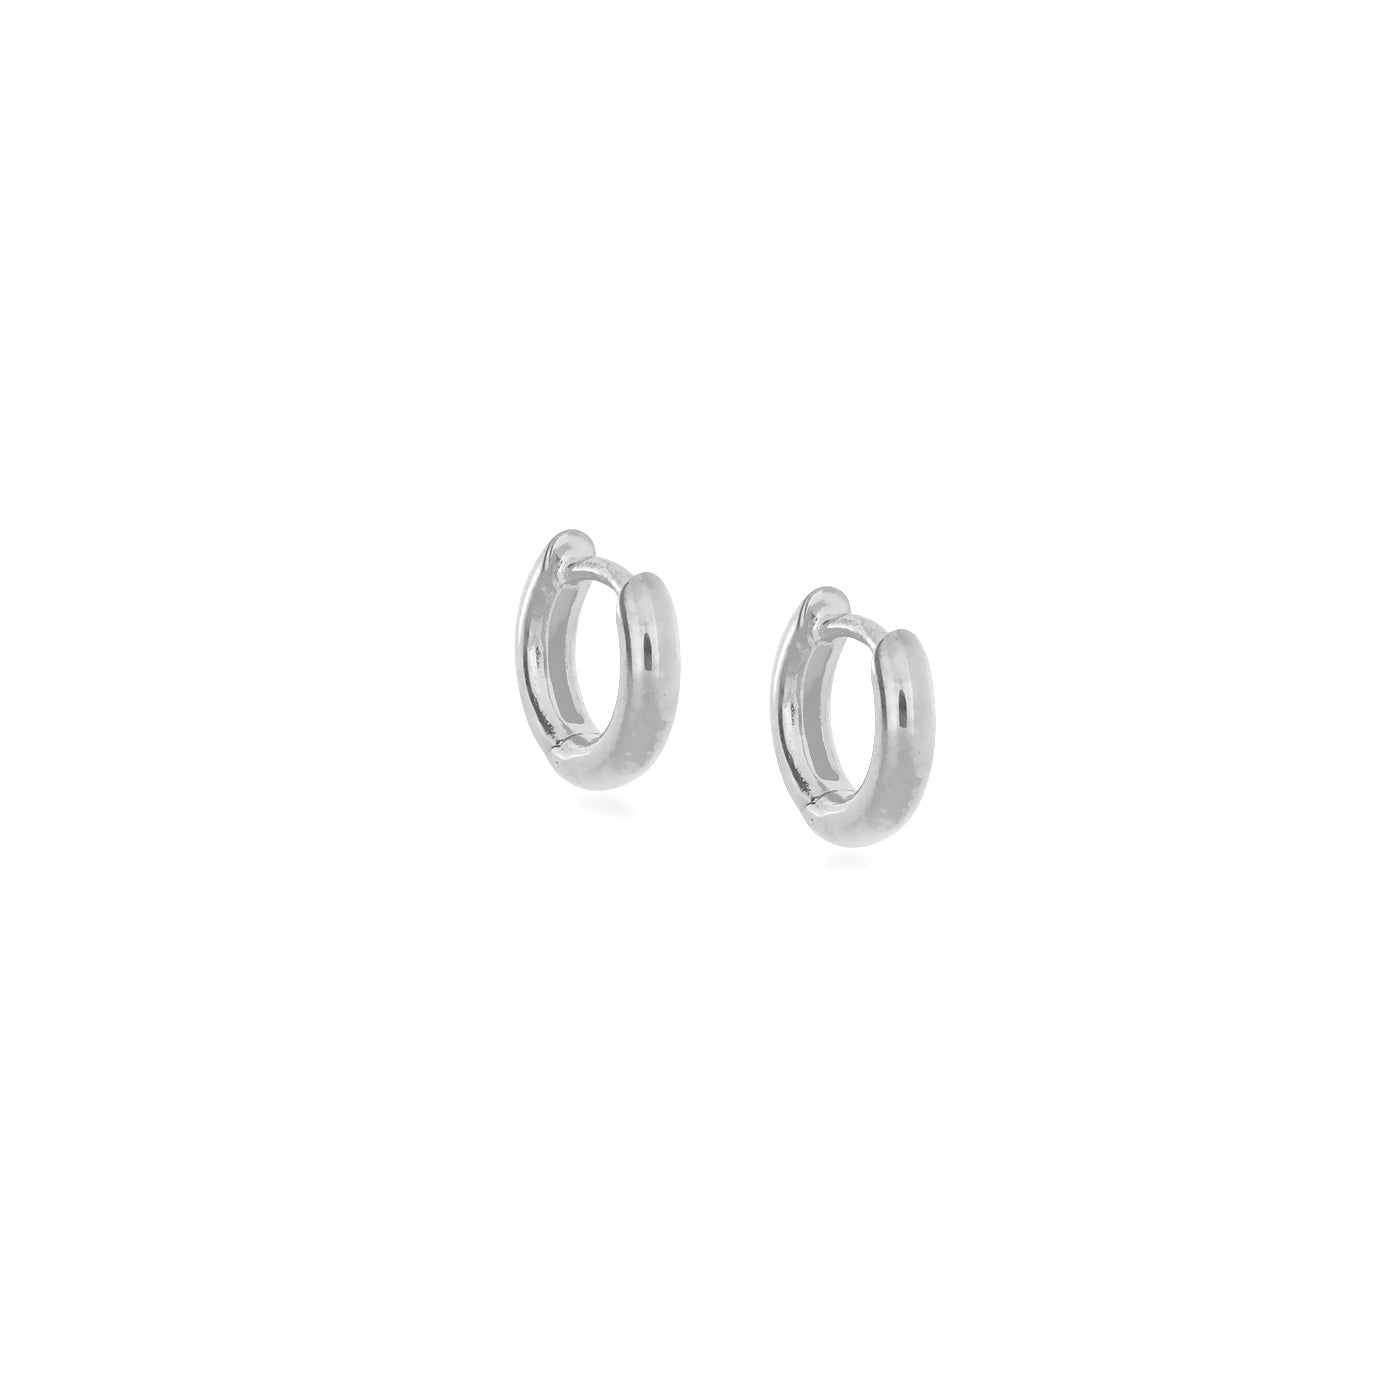 Hinge Hoop Earrings - Small Rounded